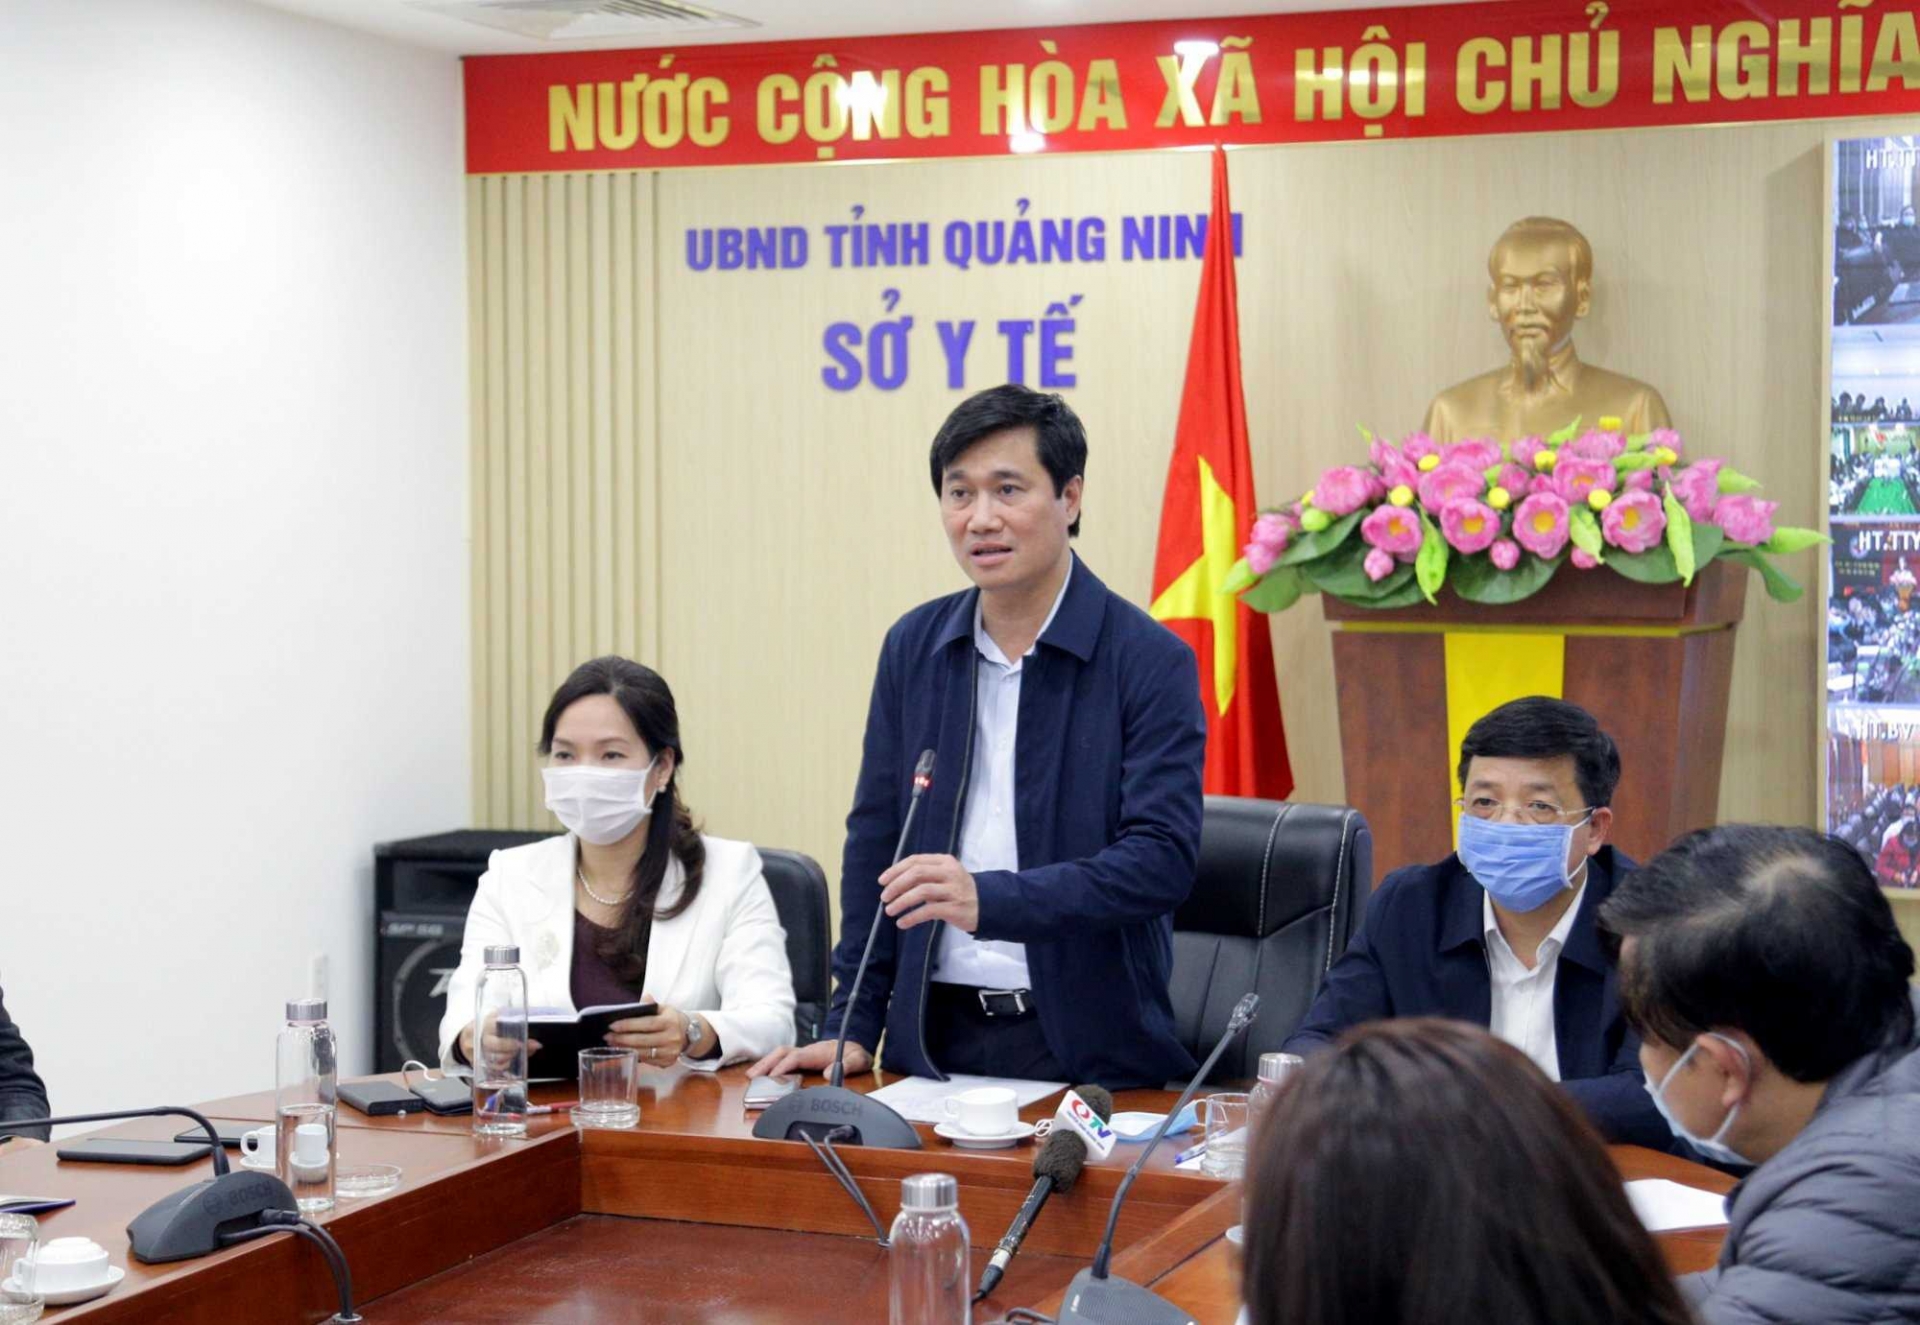 Ban Chỉ đạo phòng chống dịch Covid-19 tỉnh Quảng Ninh đã họp khẩn cấp để kích hoạt ngay các biện pháp phòng chống Covid-19 khi có ca nhiễm mới trên địa bàn.